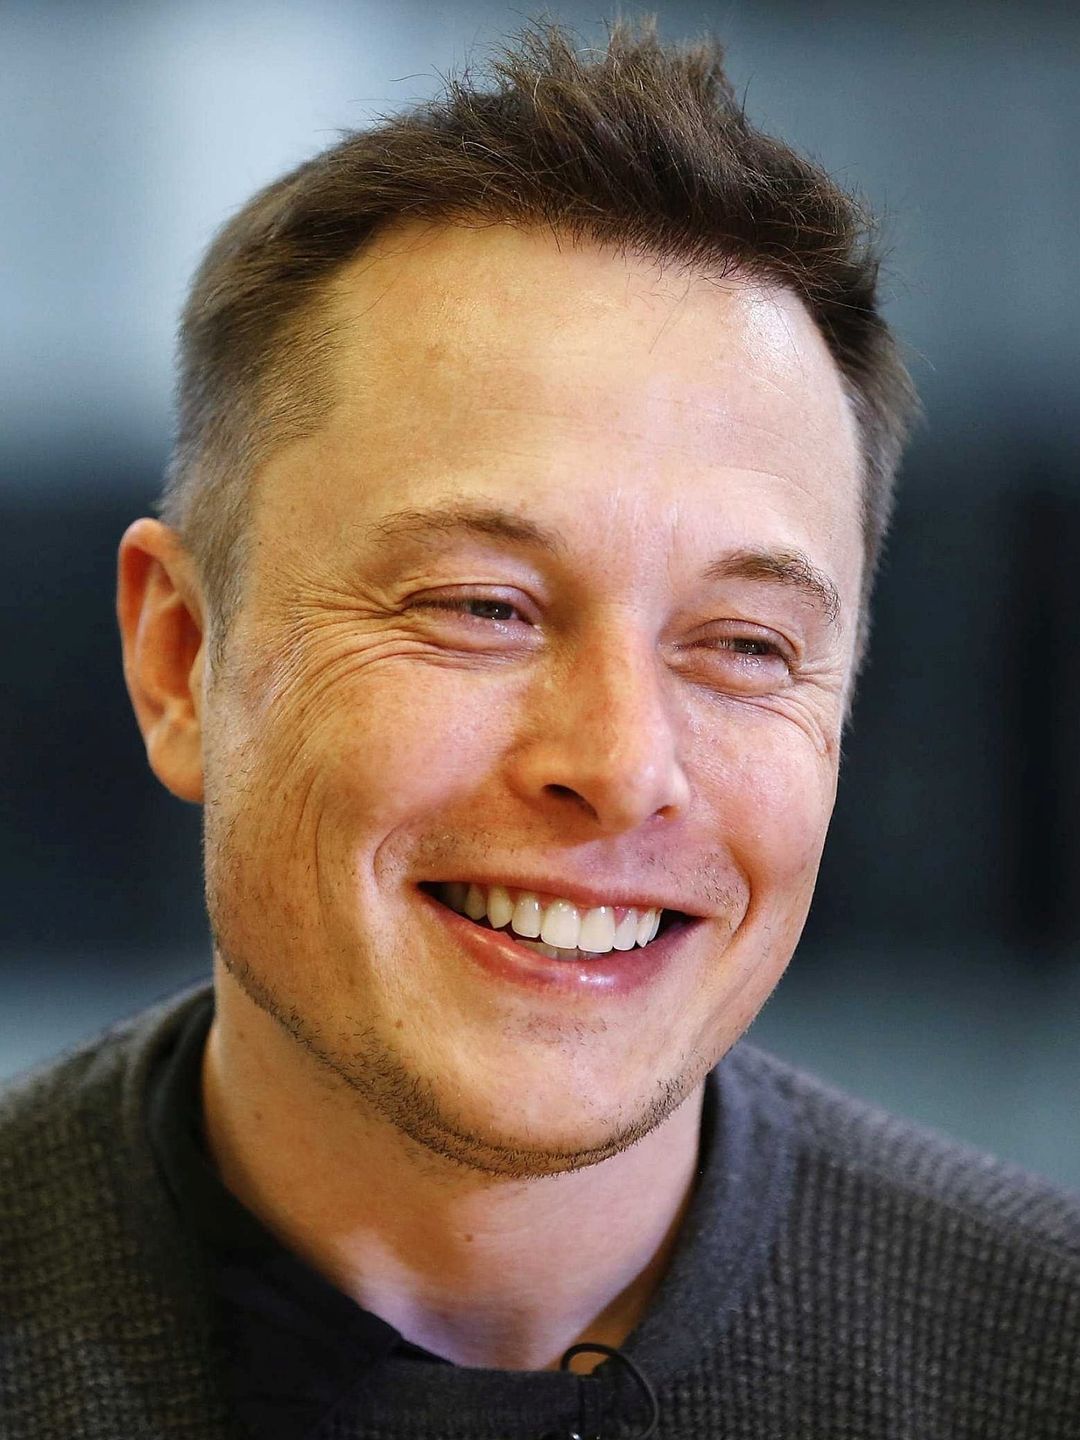 Elon Musk who is he